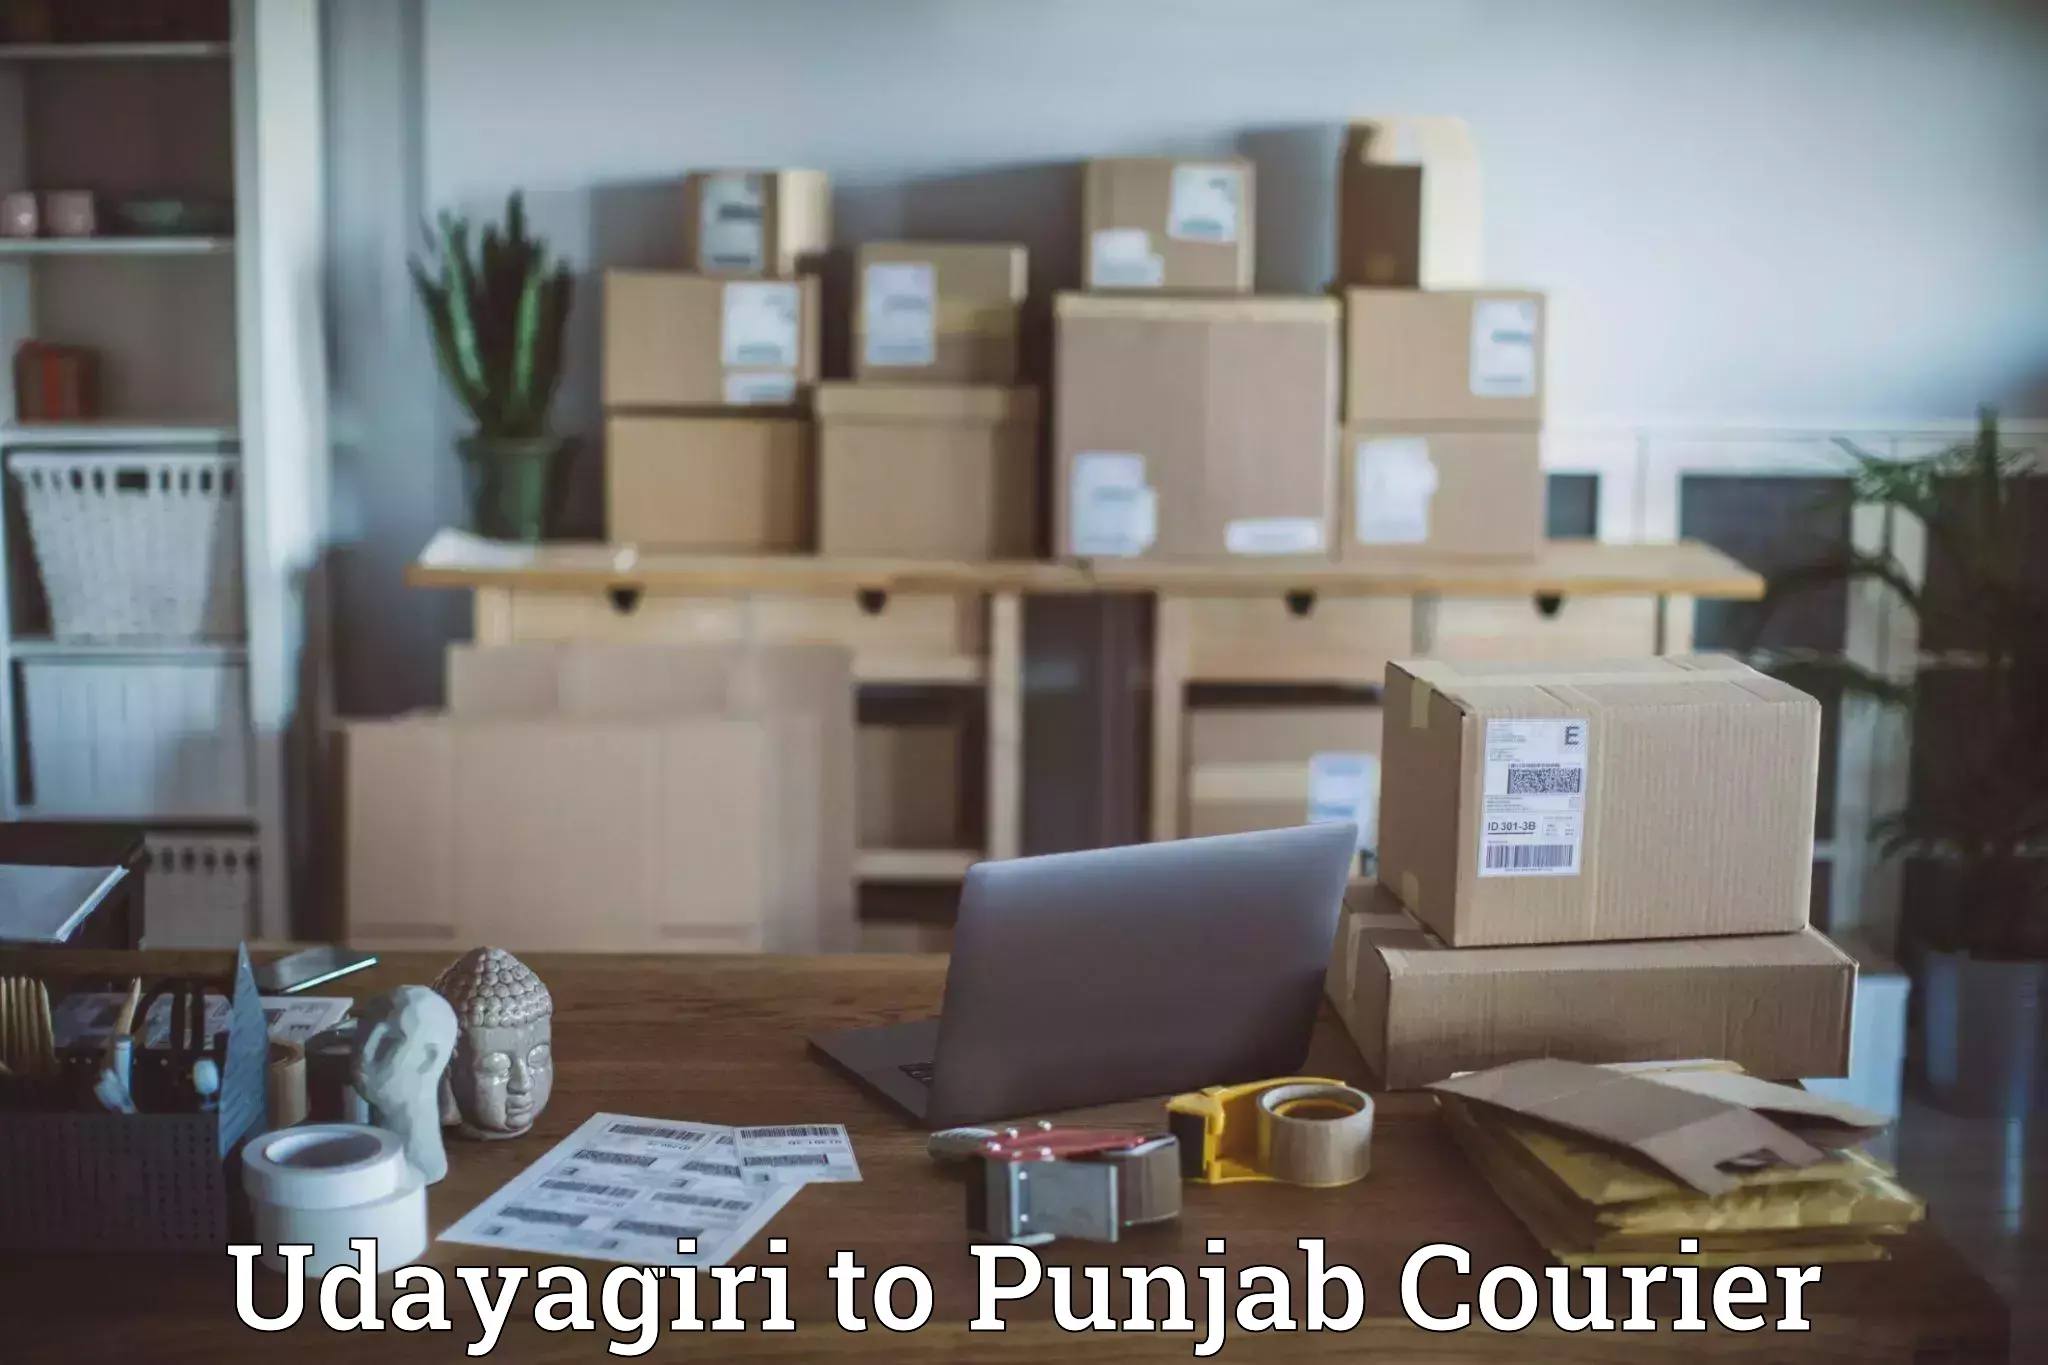 Global shipping solutions Udayagiri to Punjab